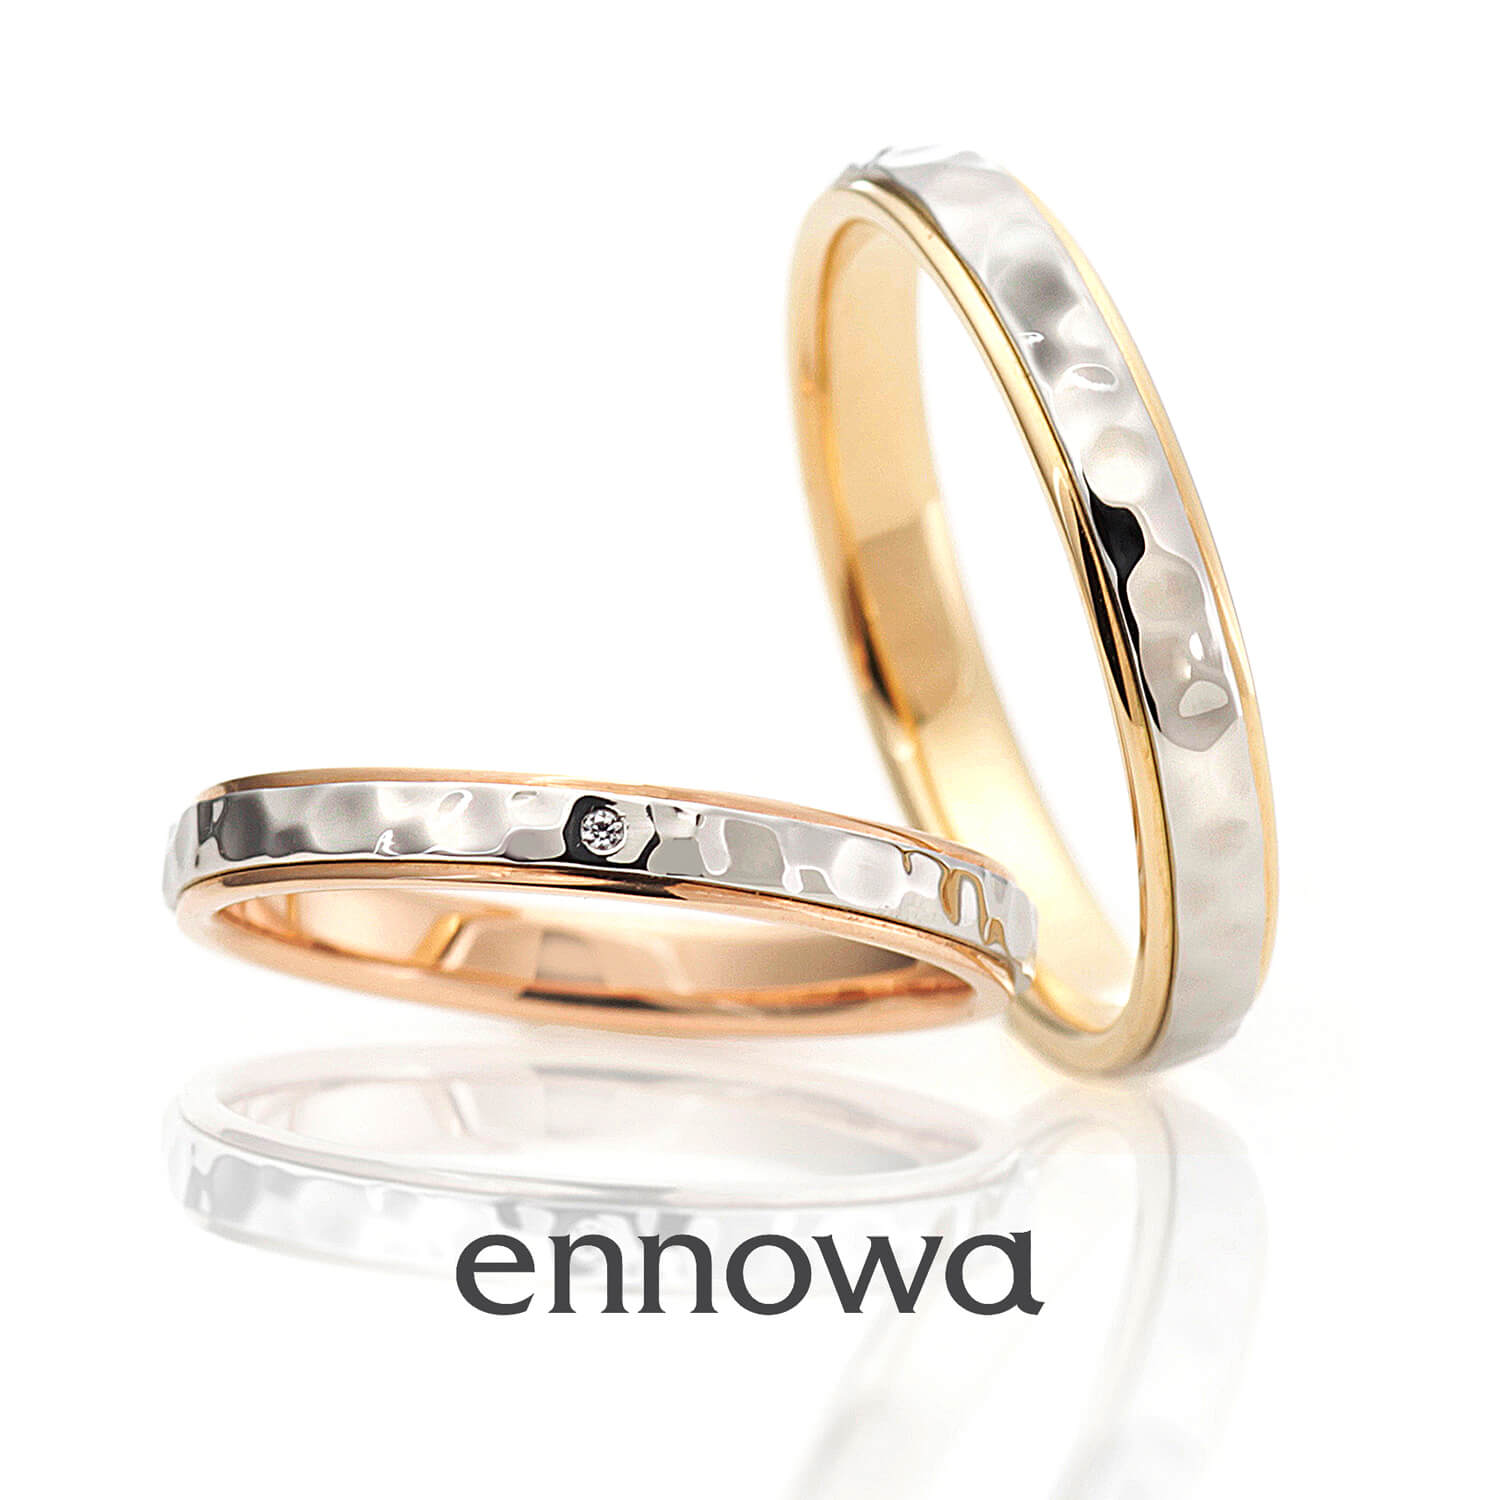 ennowaエンノワの結婚指輪HOSHINOWAホシノワ